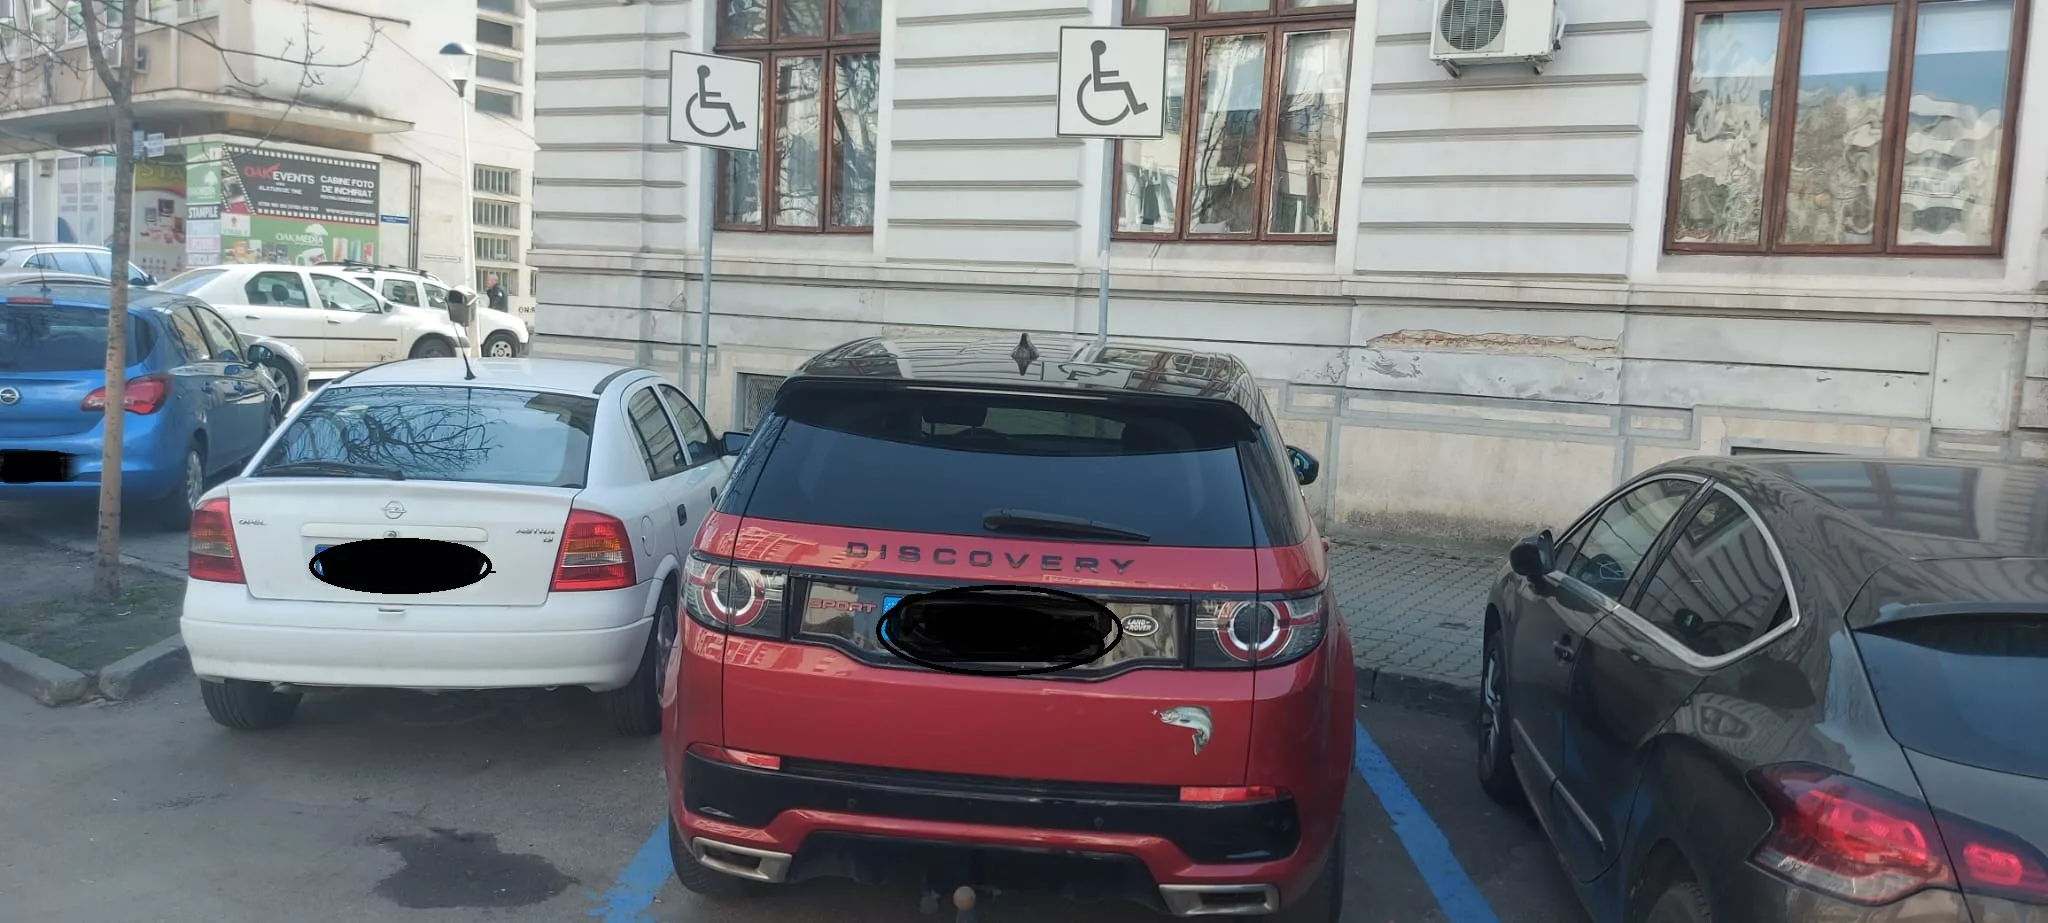 În Craiova, pe locurile de handicap se văd din ce în ce mai des maşini de lux